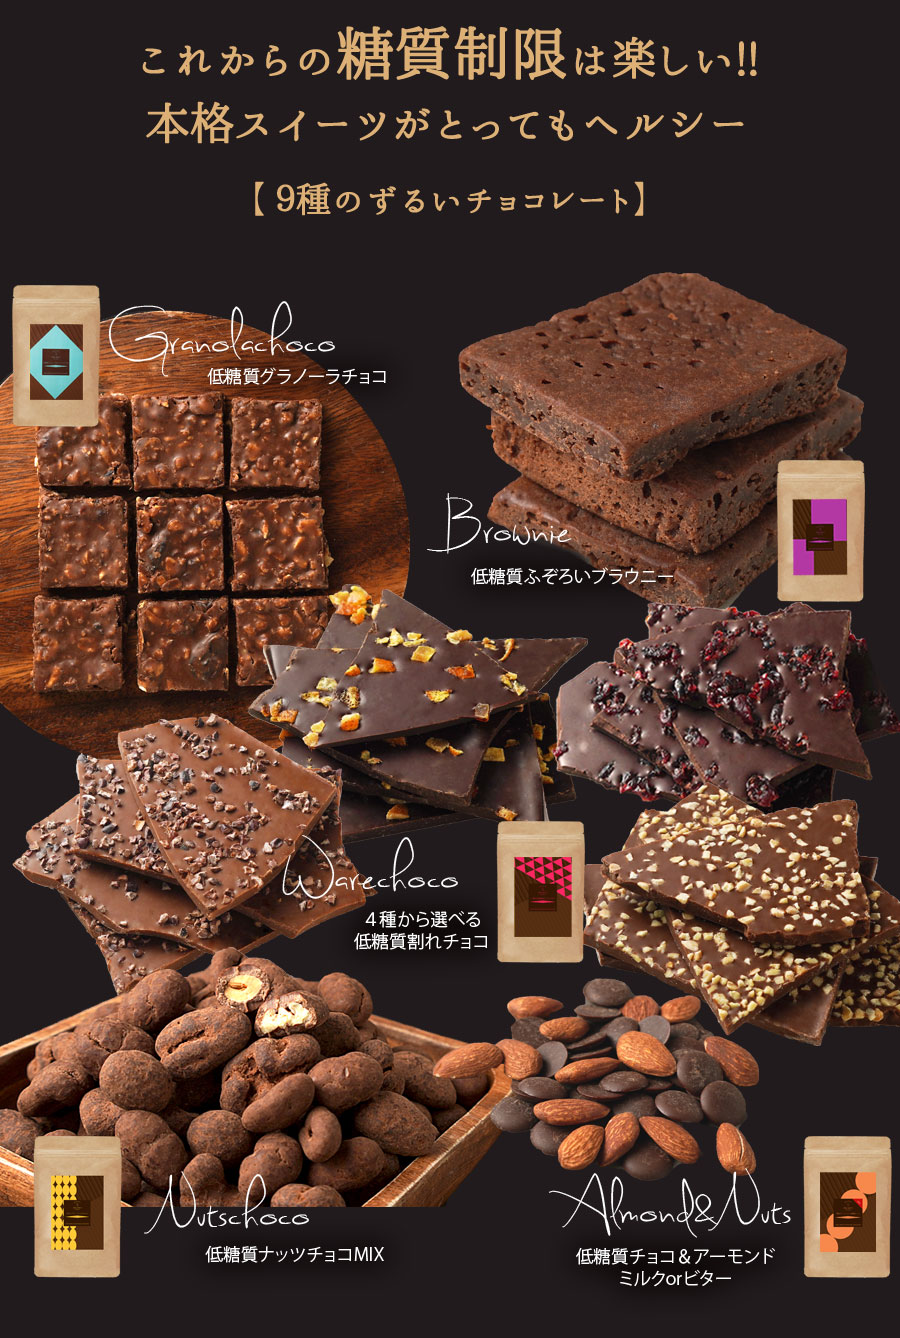 チョコレート お試し 選べる9種類のずるいチョコレート 送料無料